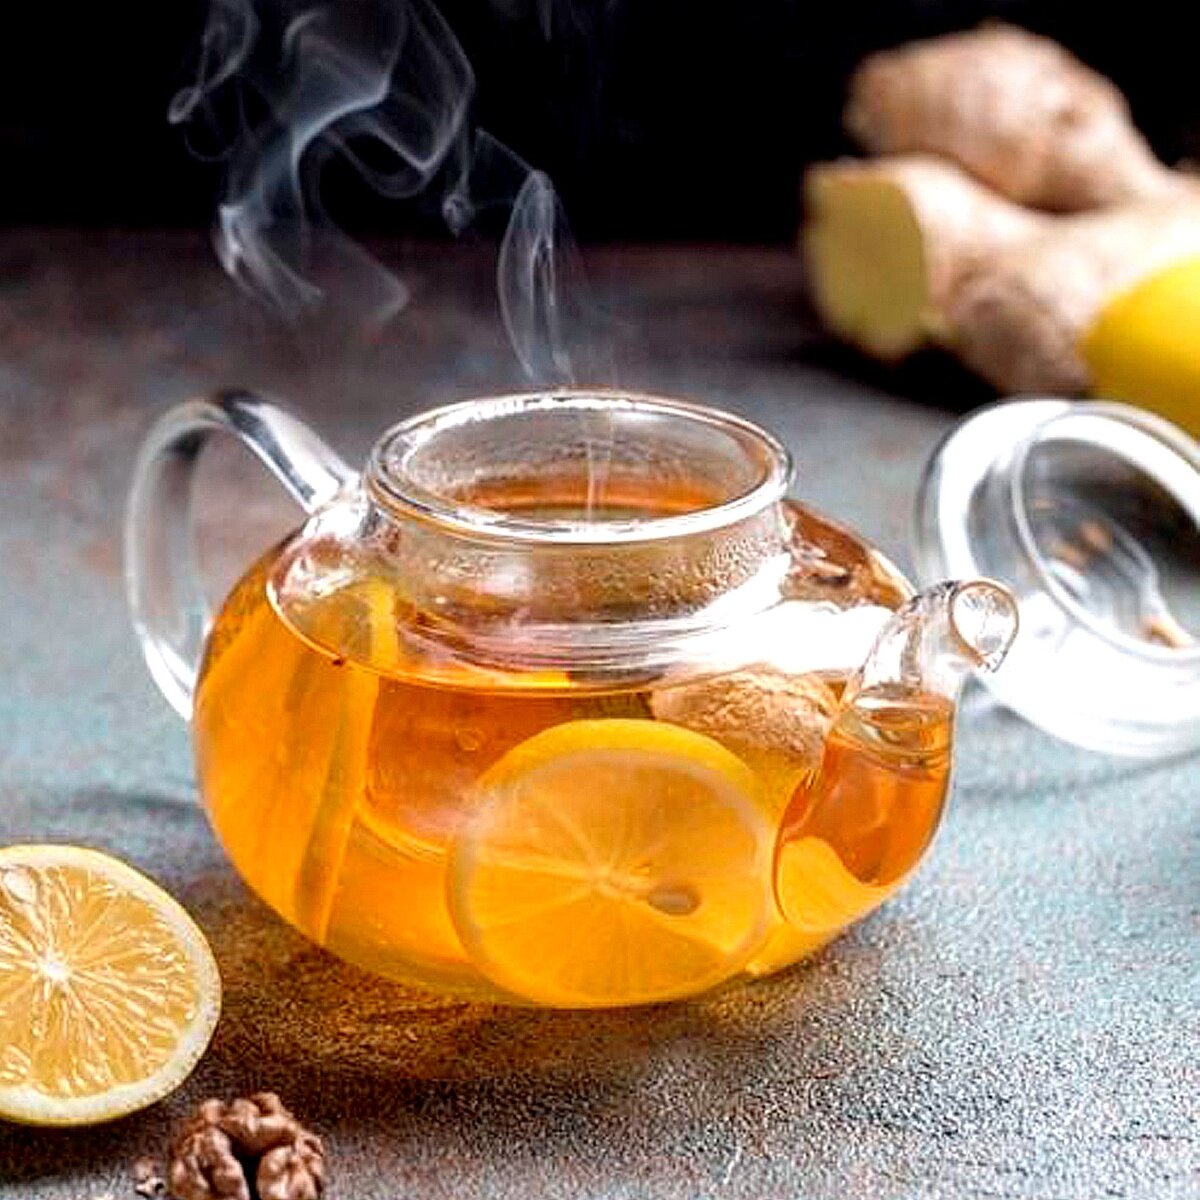 Пейте чай с медом и лимоном